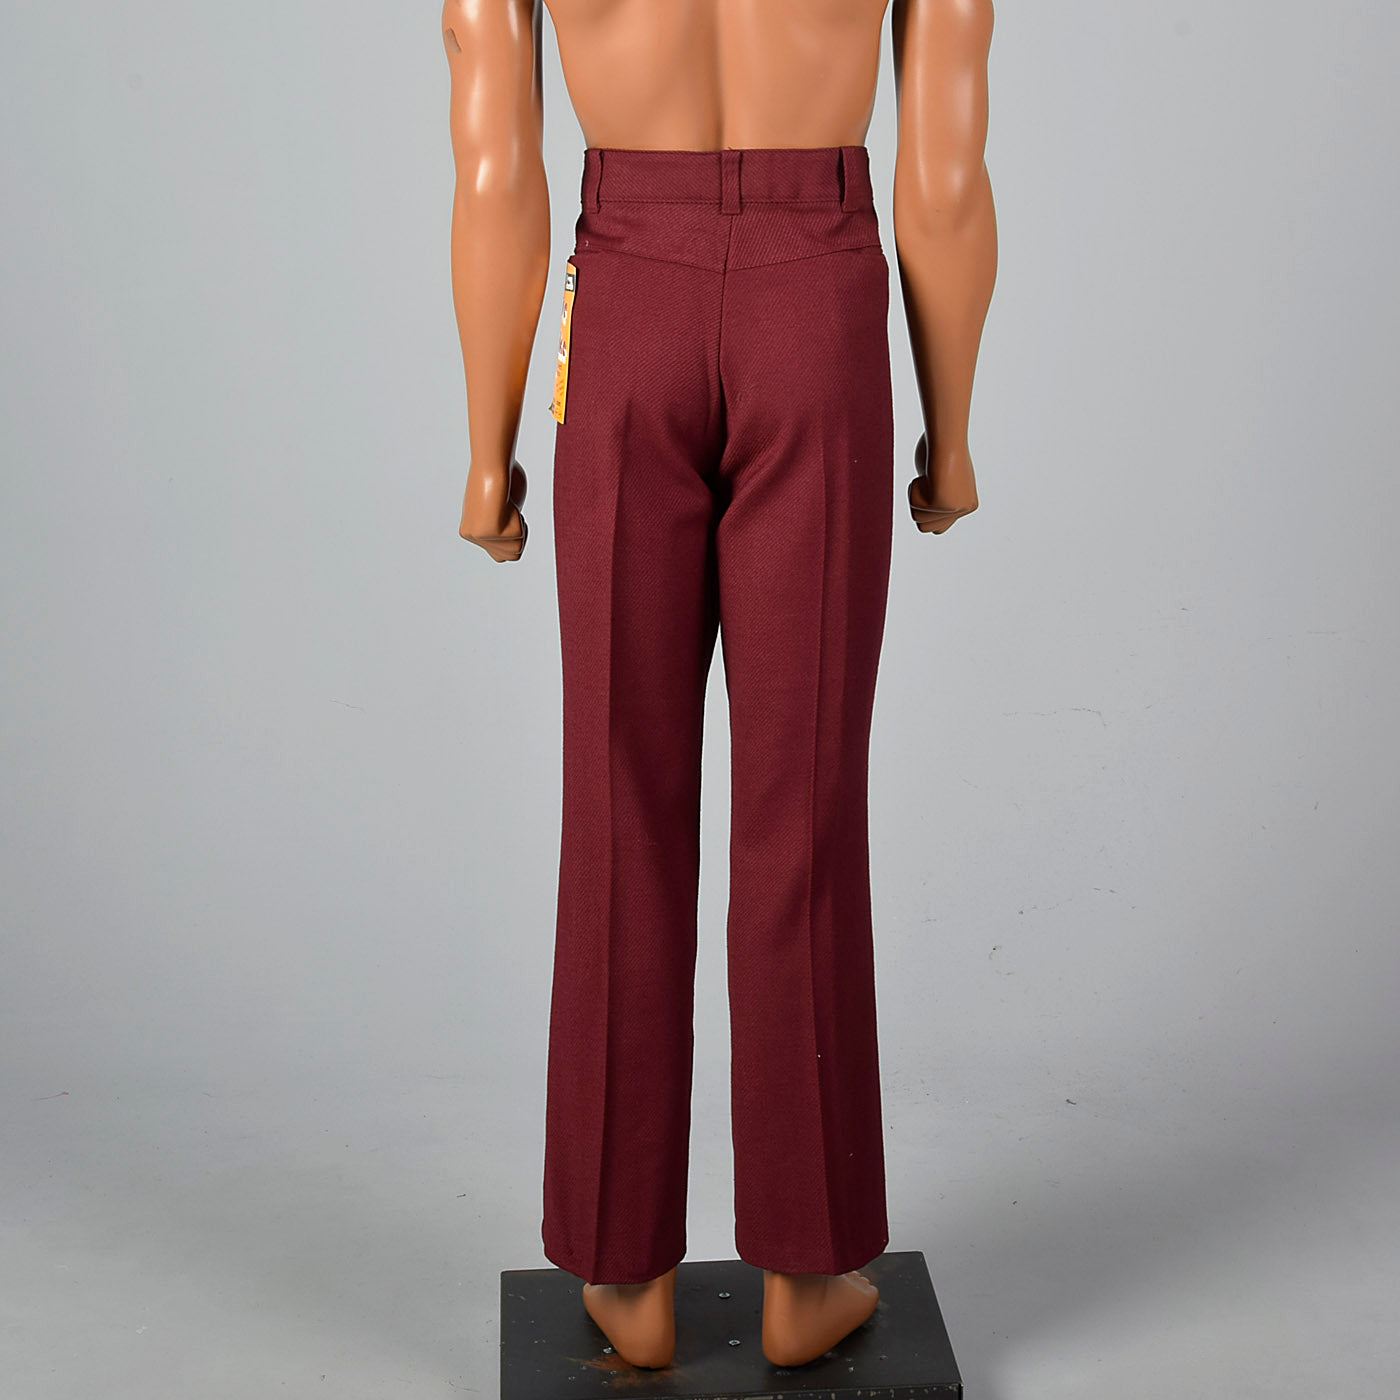 1970s NOS Sears Maroon Pants